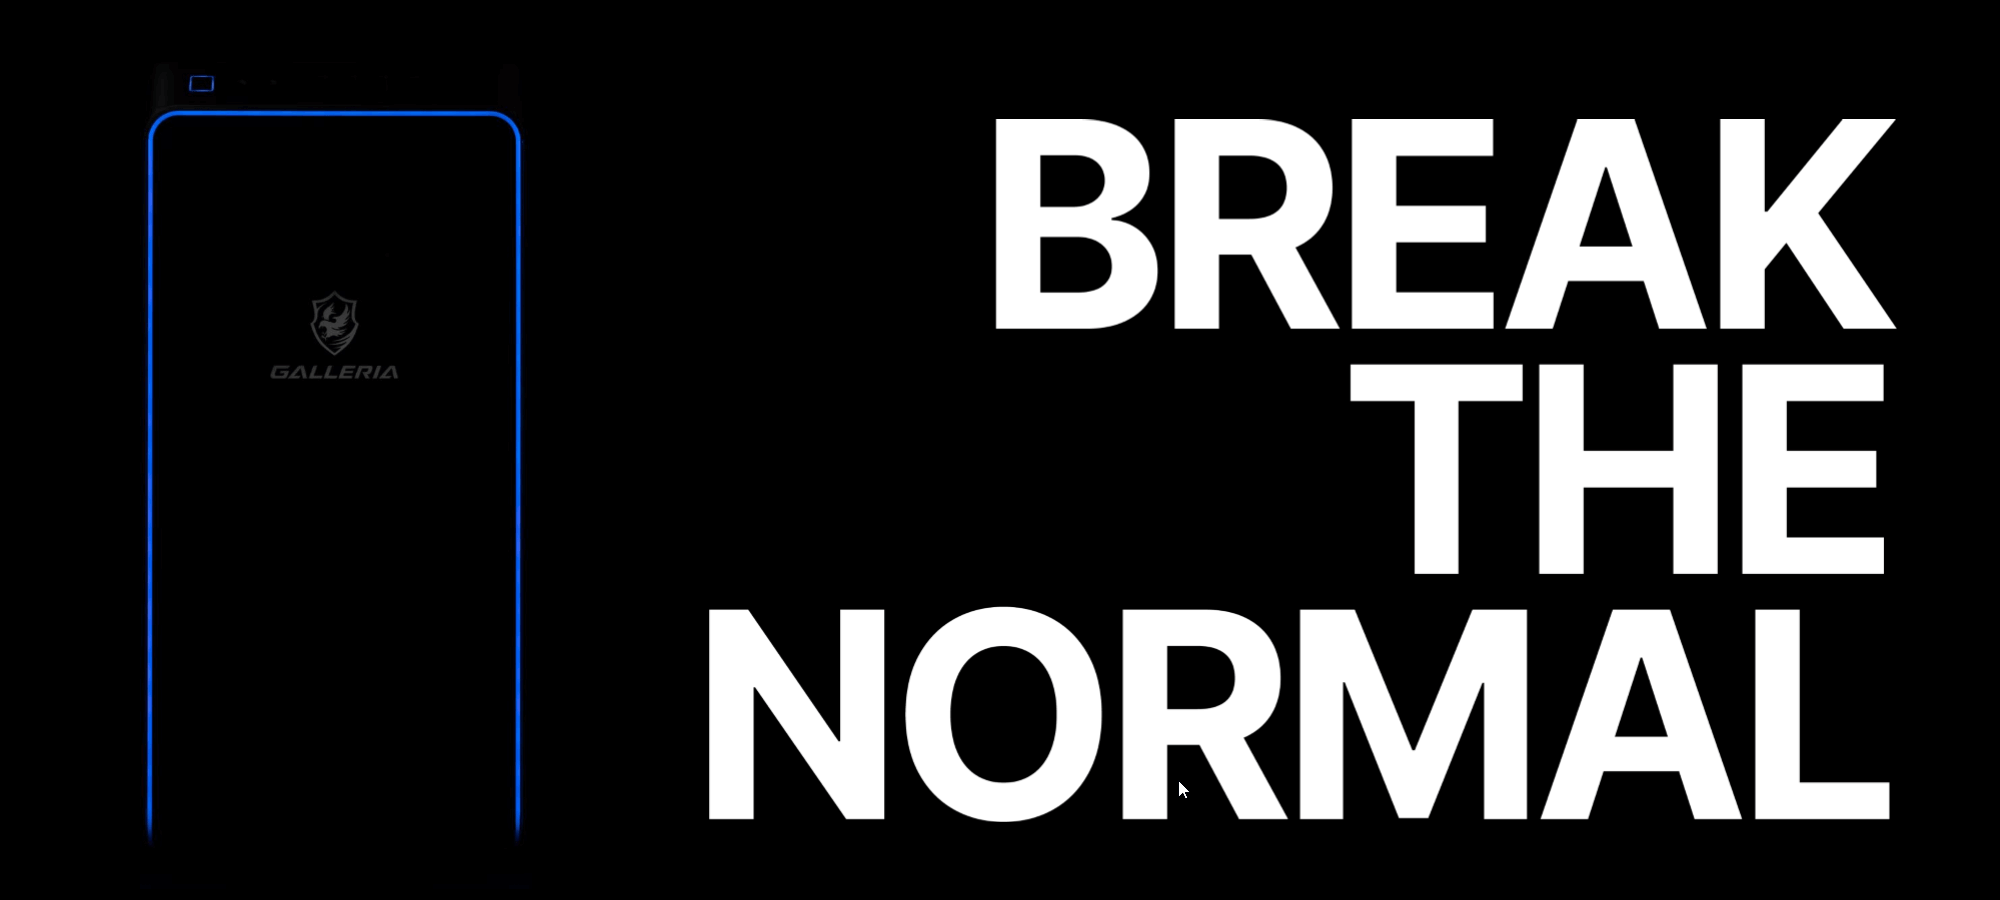 BREAK THE NORMAL